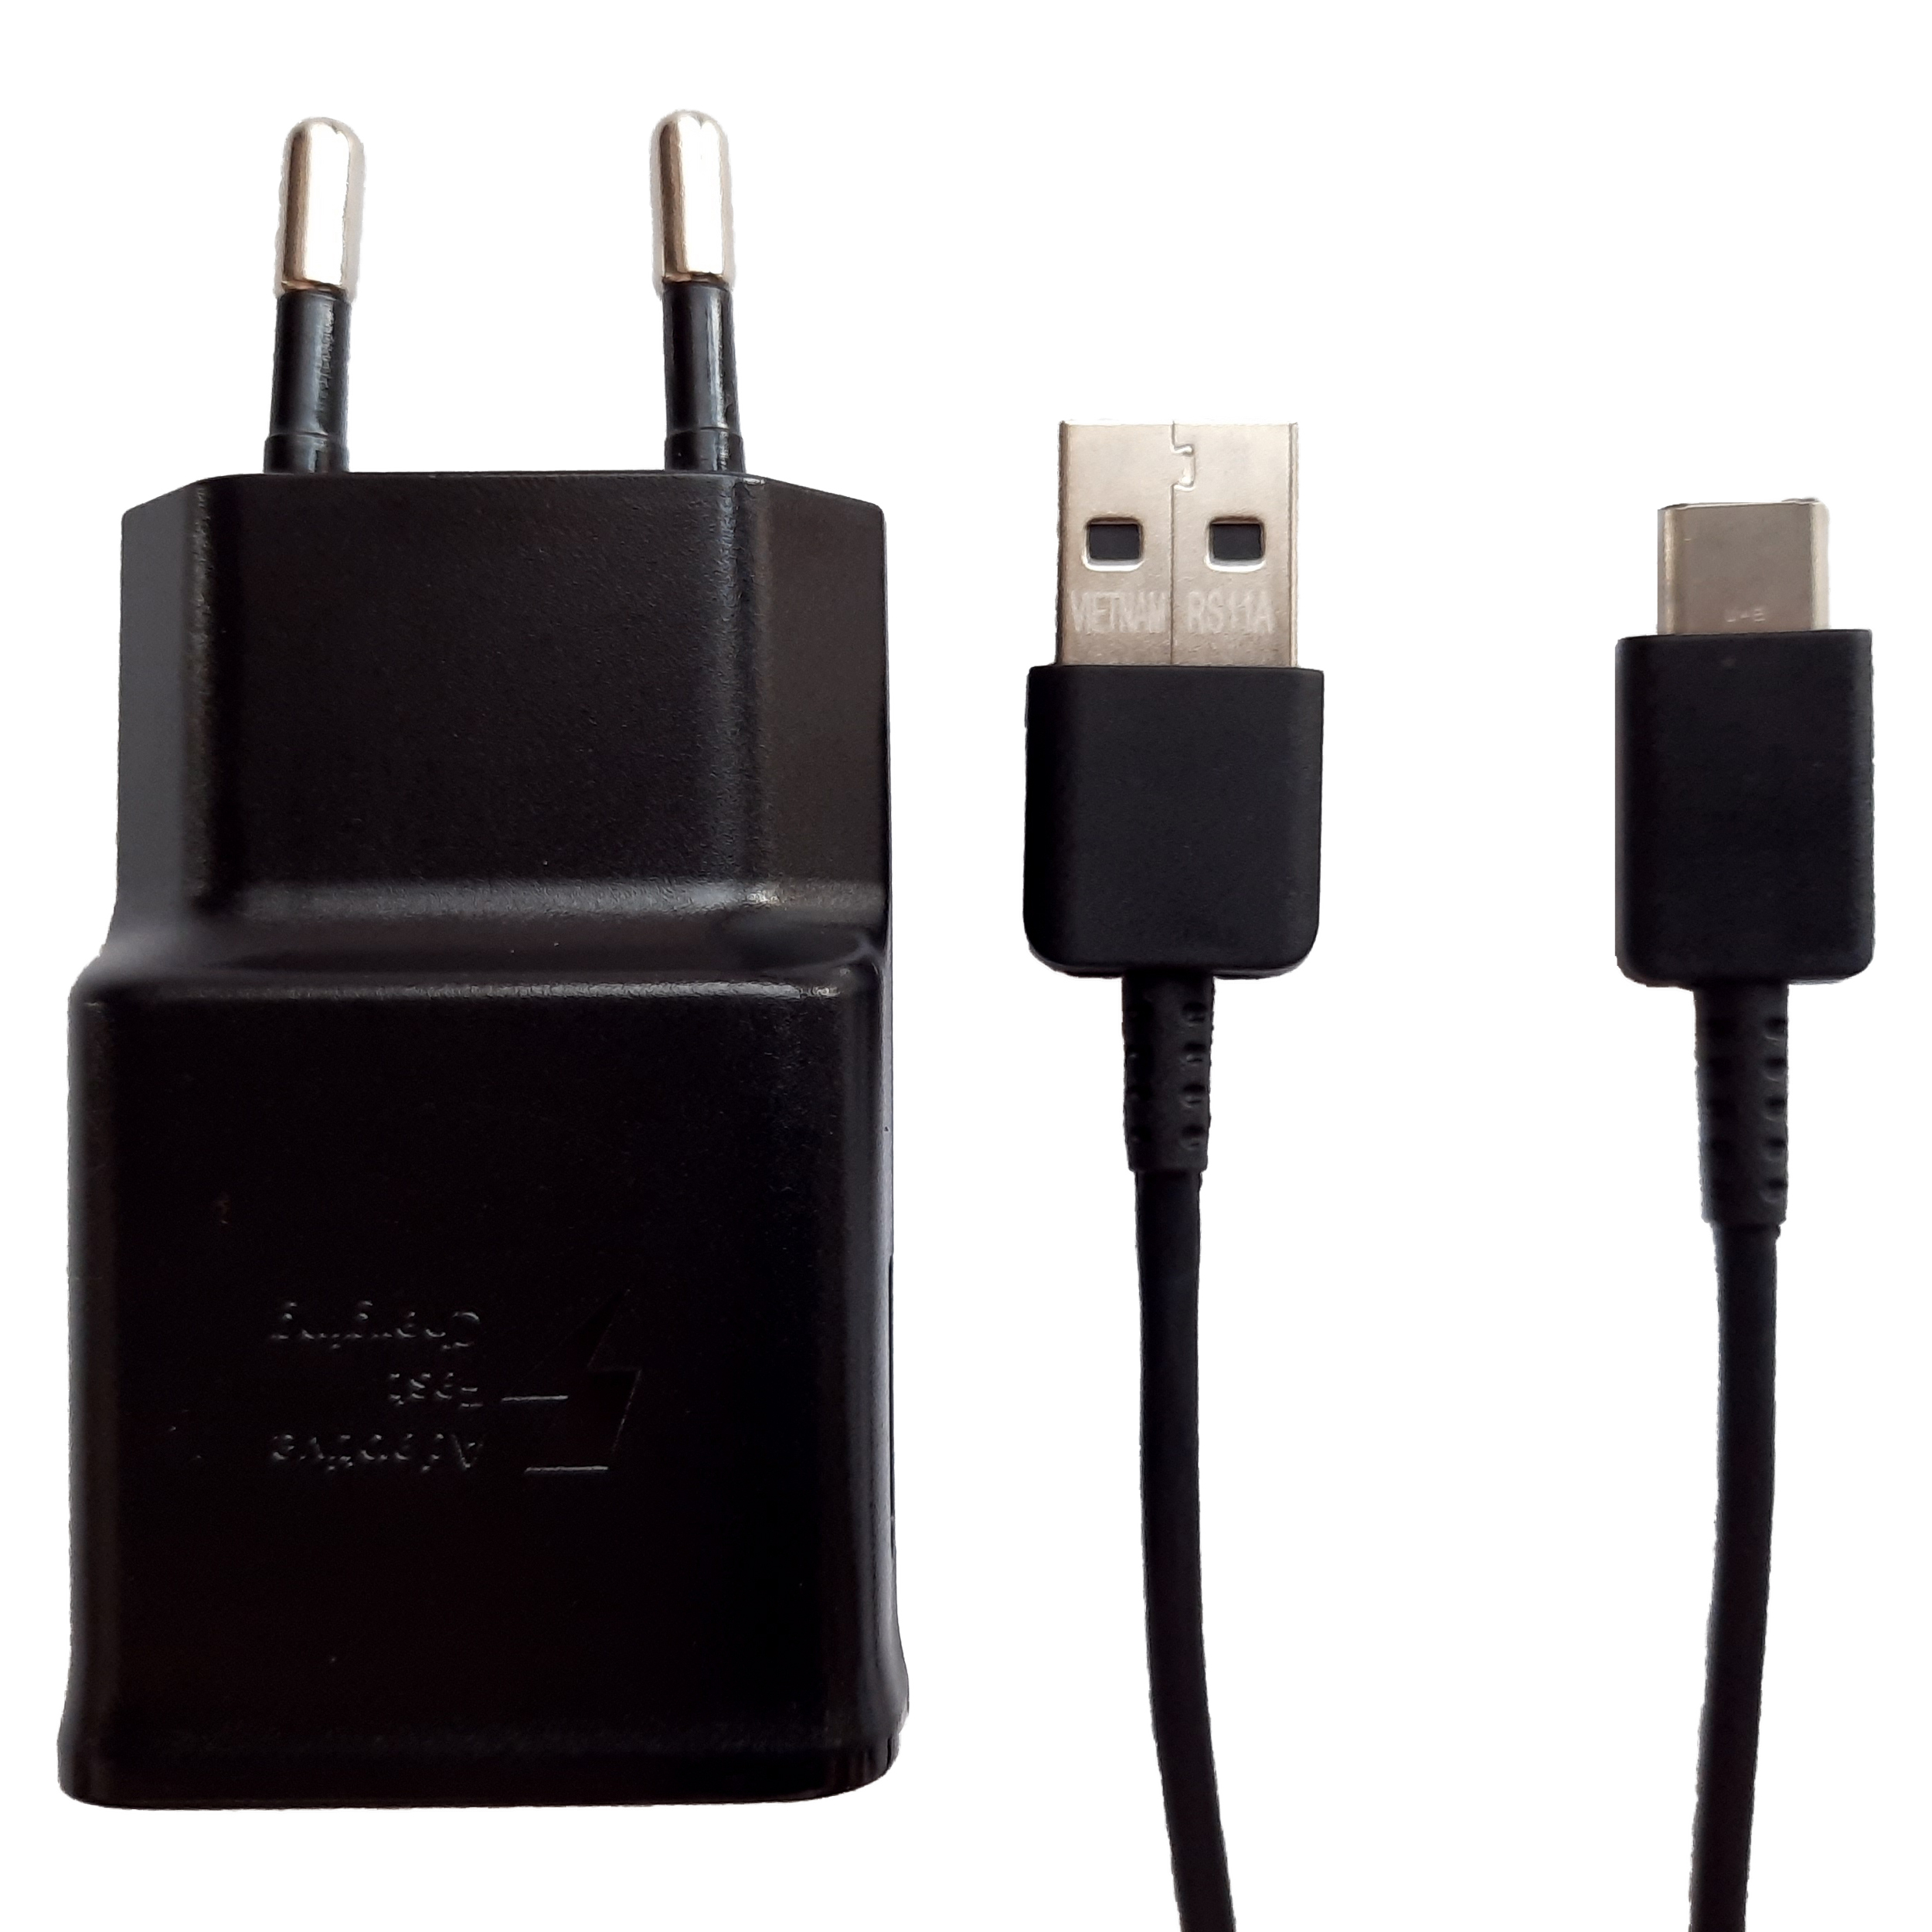 قیمت و خرید شارژر دیواری مدل EP-TA200 به همراه کابل تبدیل USB-C